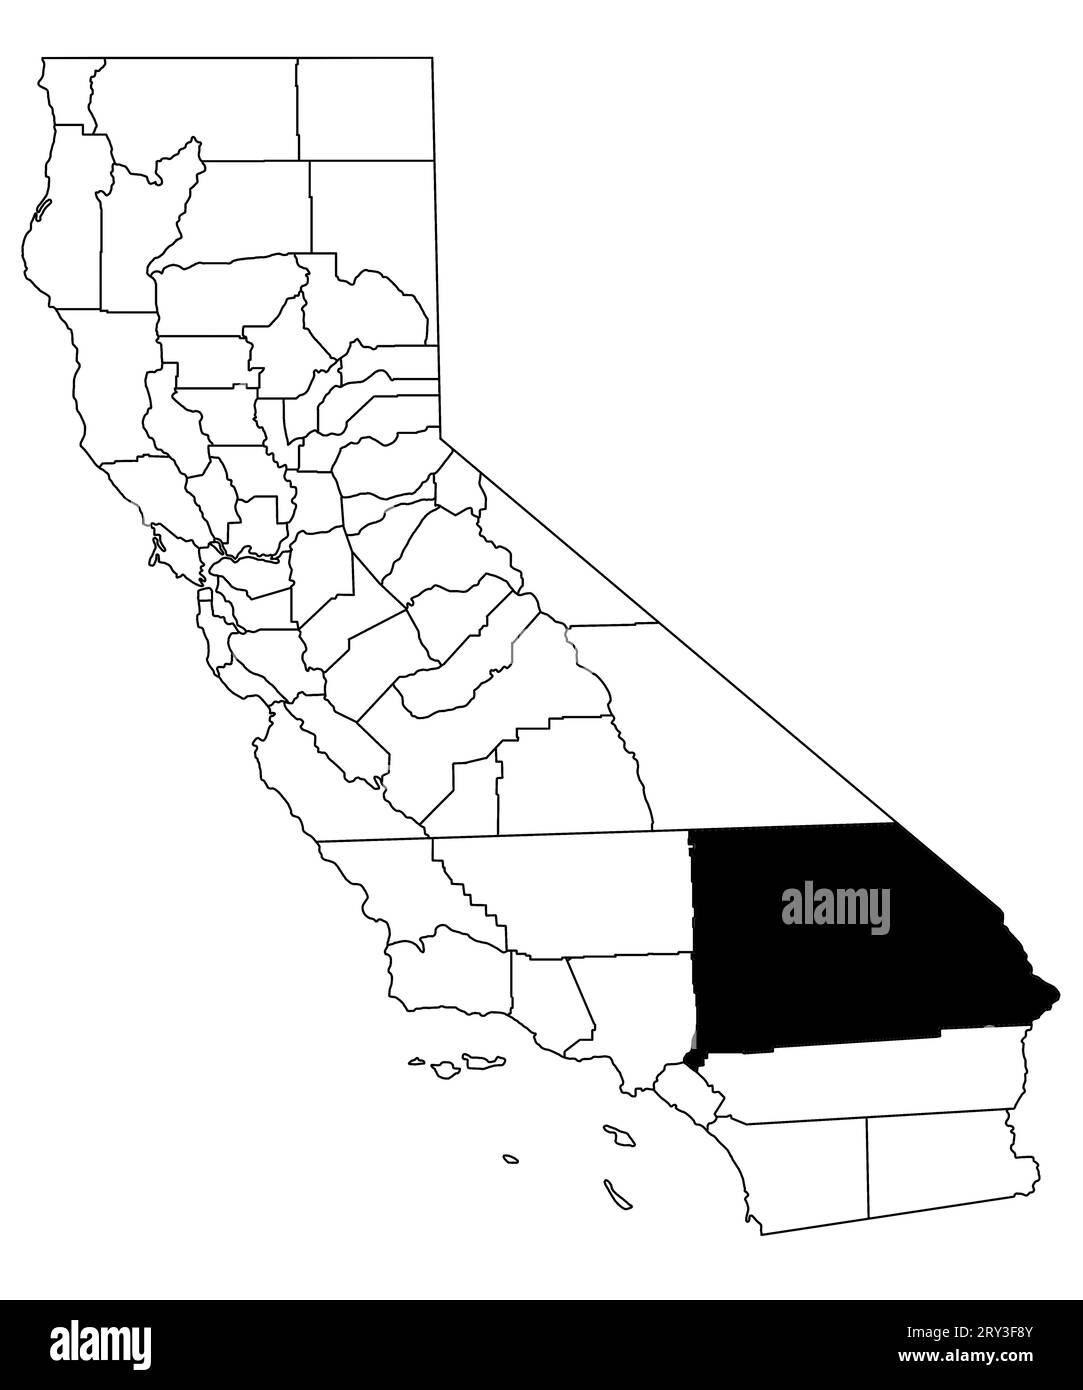 Mappa della contea di San Bernardino nello stato della California su sfondo bianco. Mappa singola della contea evidenziata in nero sulla mappa della California. STATI UNITI, Foto Stock